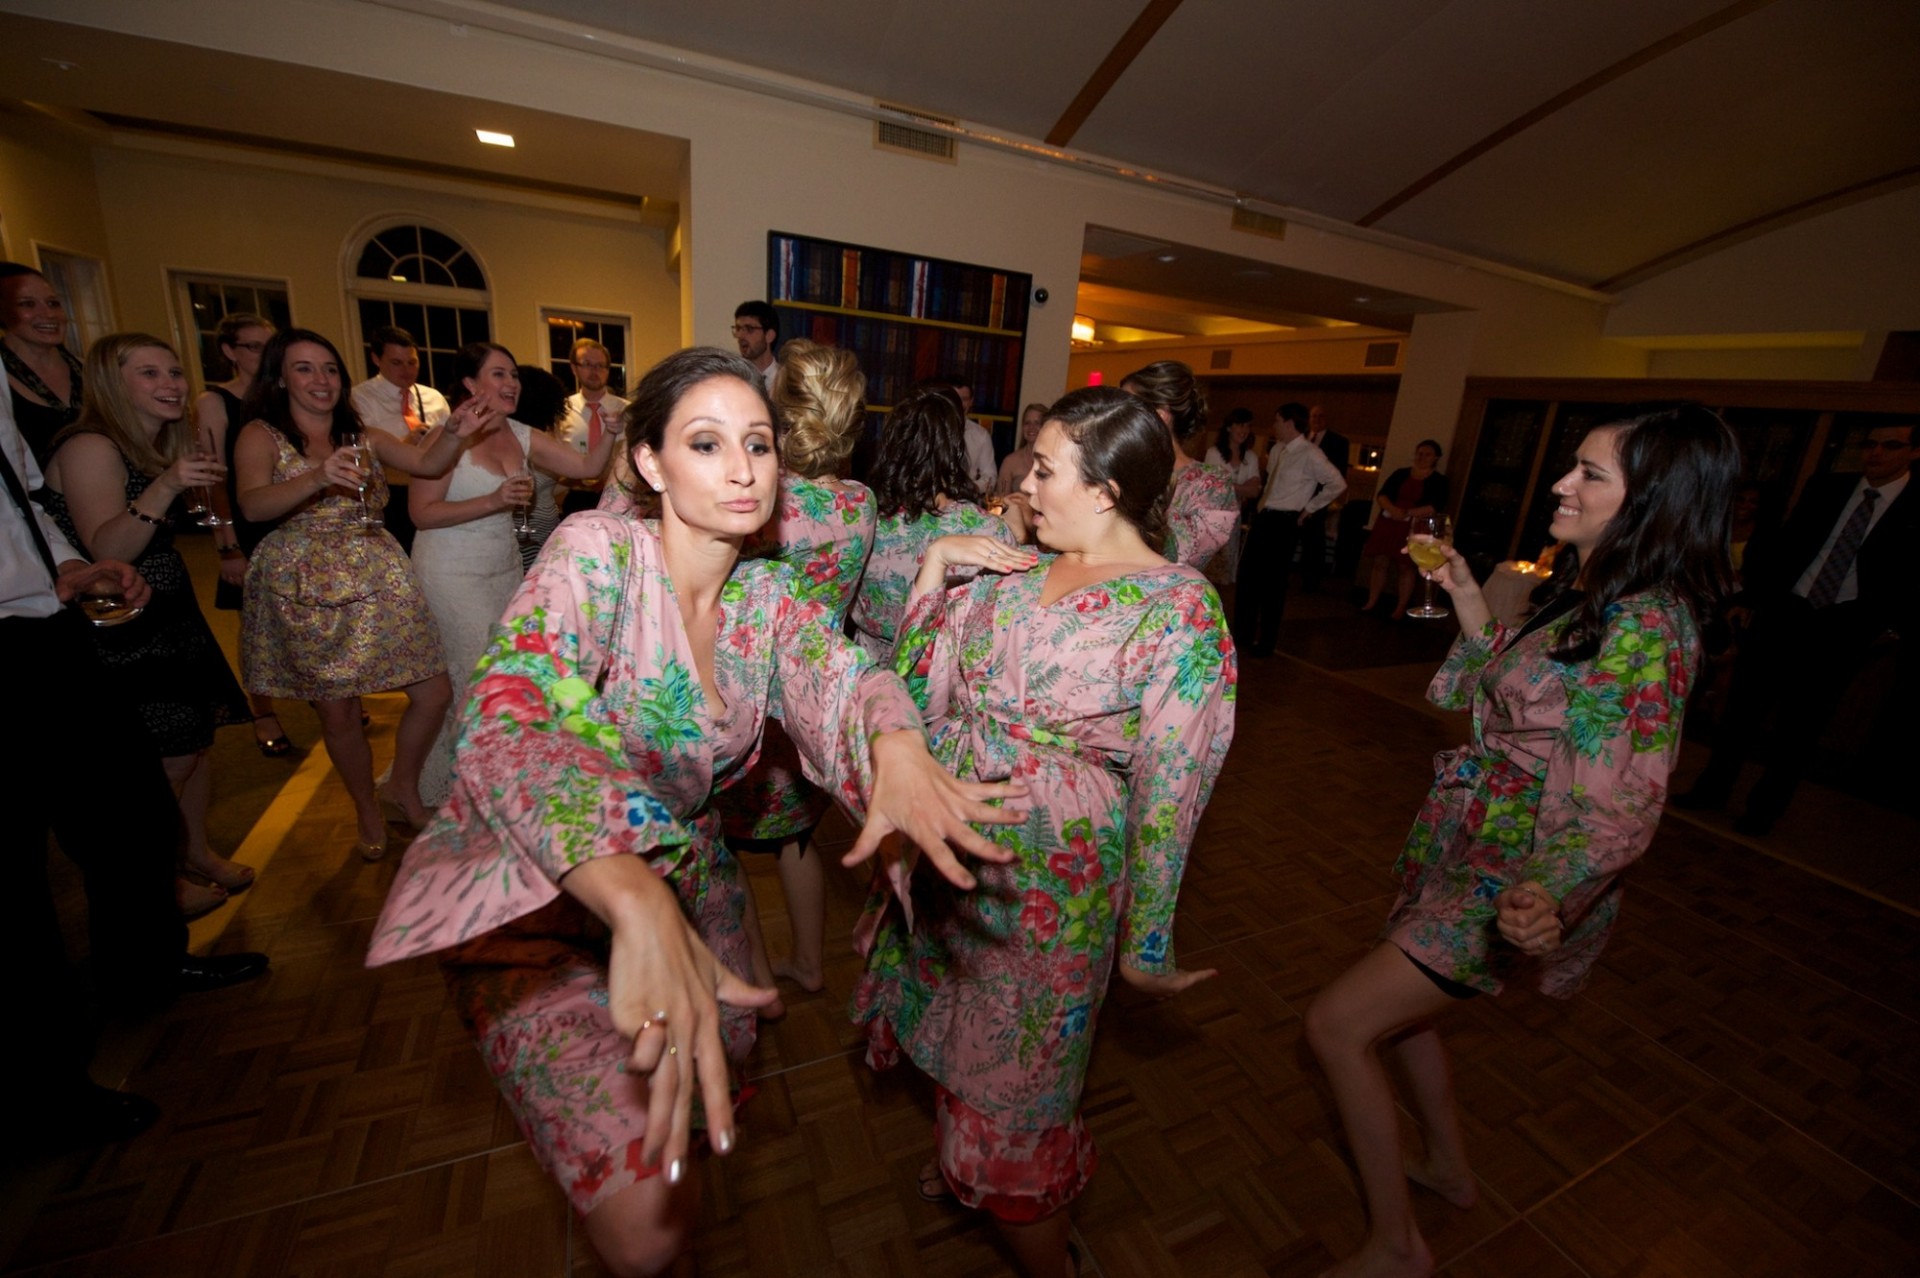 a photo of bridesmaids dancing at a wedding.